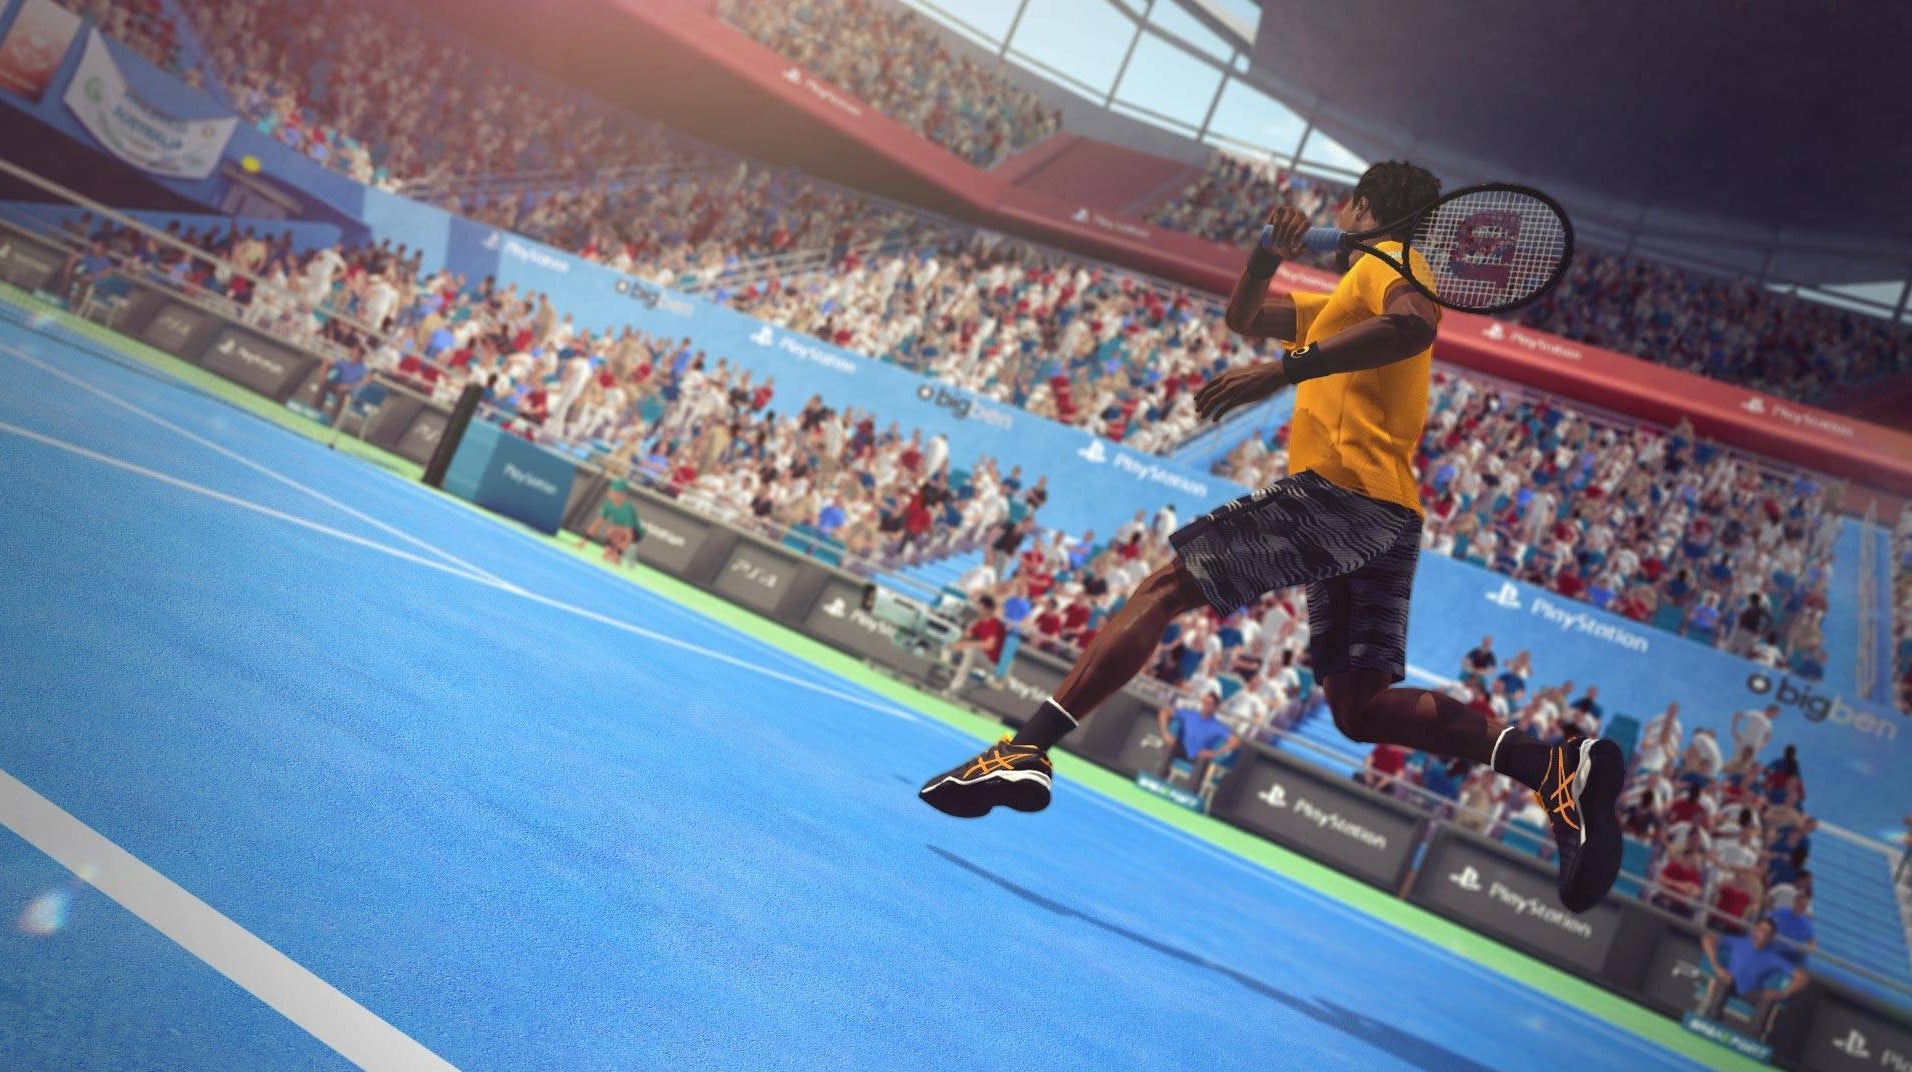 Immagine di Tennis World Tour: annunciata la nuova data di uscita per le versioni Switch e PC